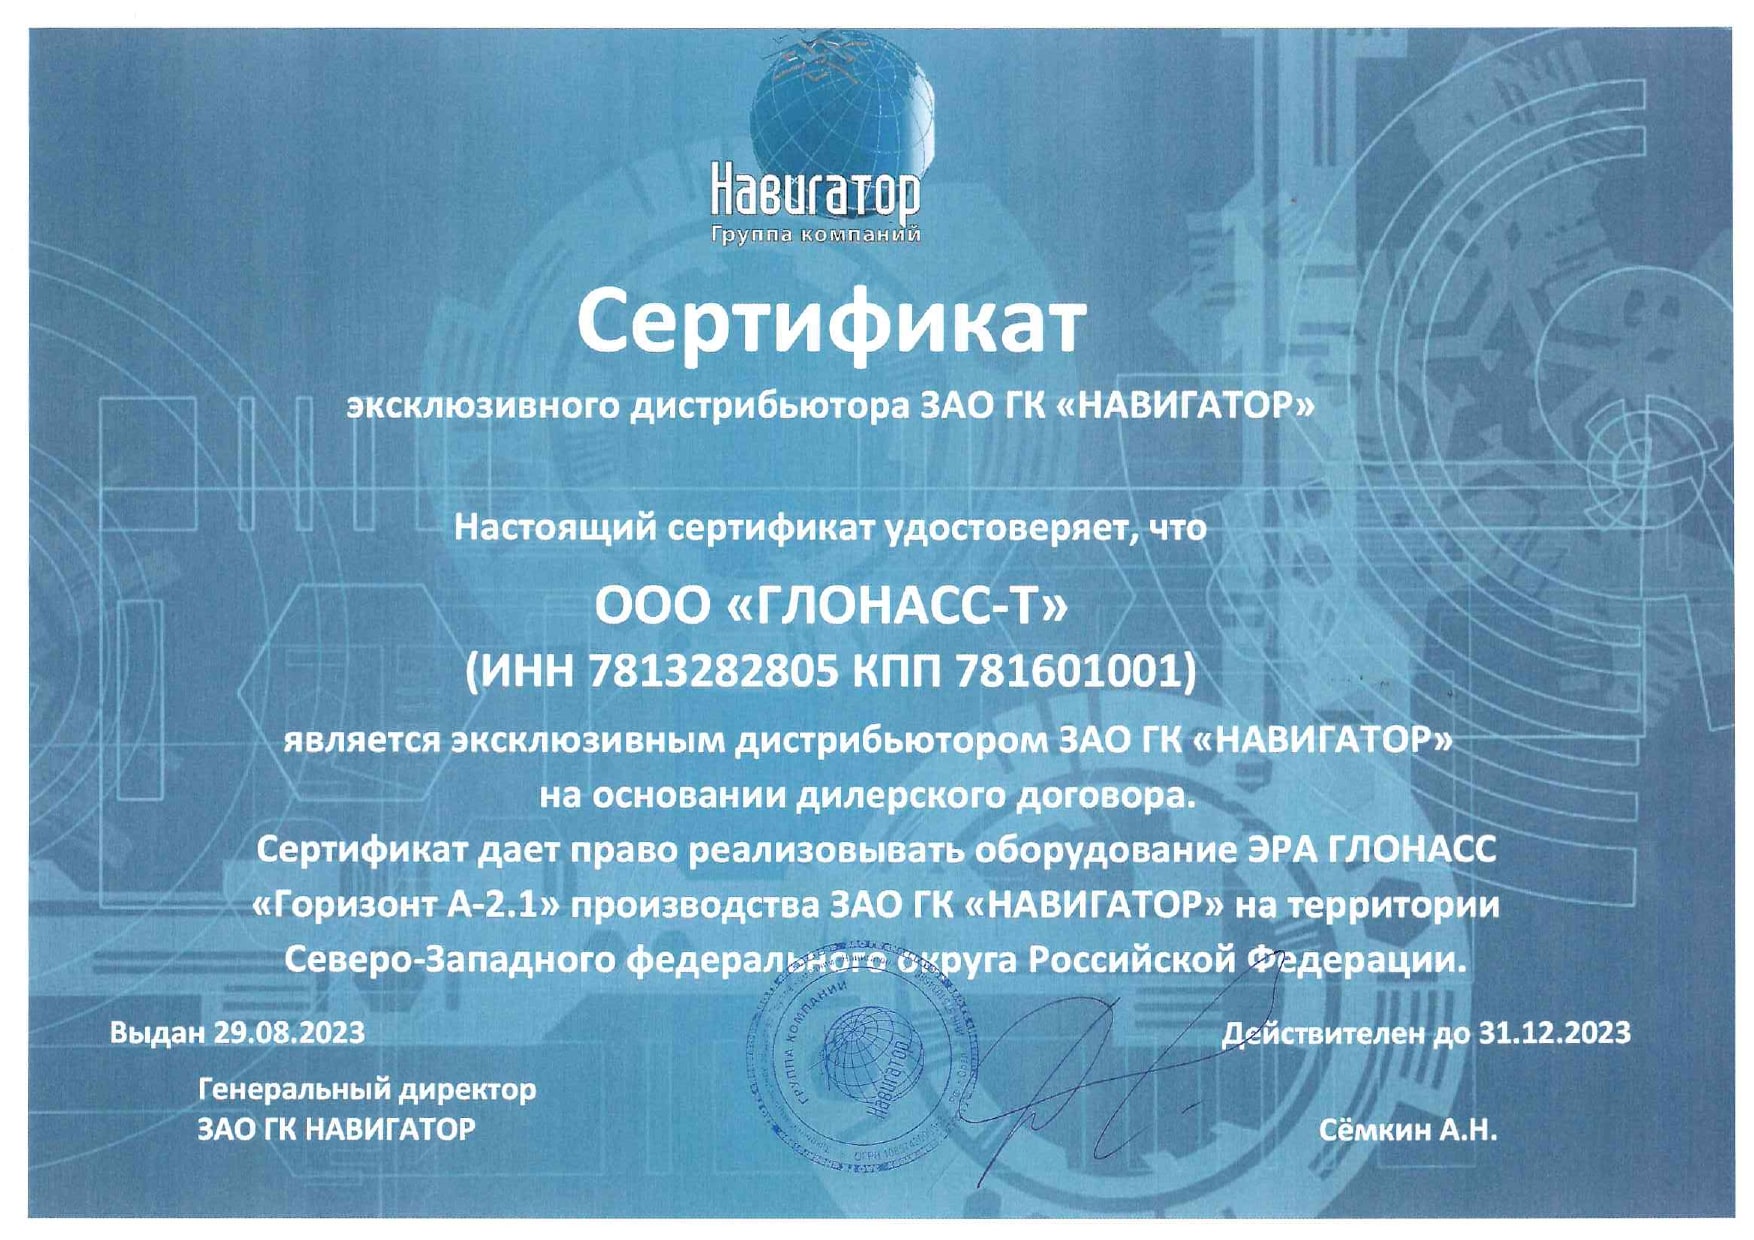 Сертификат партнера ГК Навигатор УВЭОС-Горизонт-А2.1